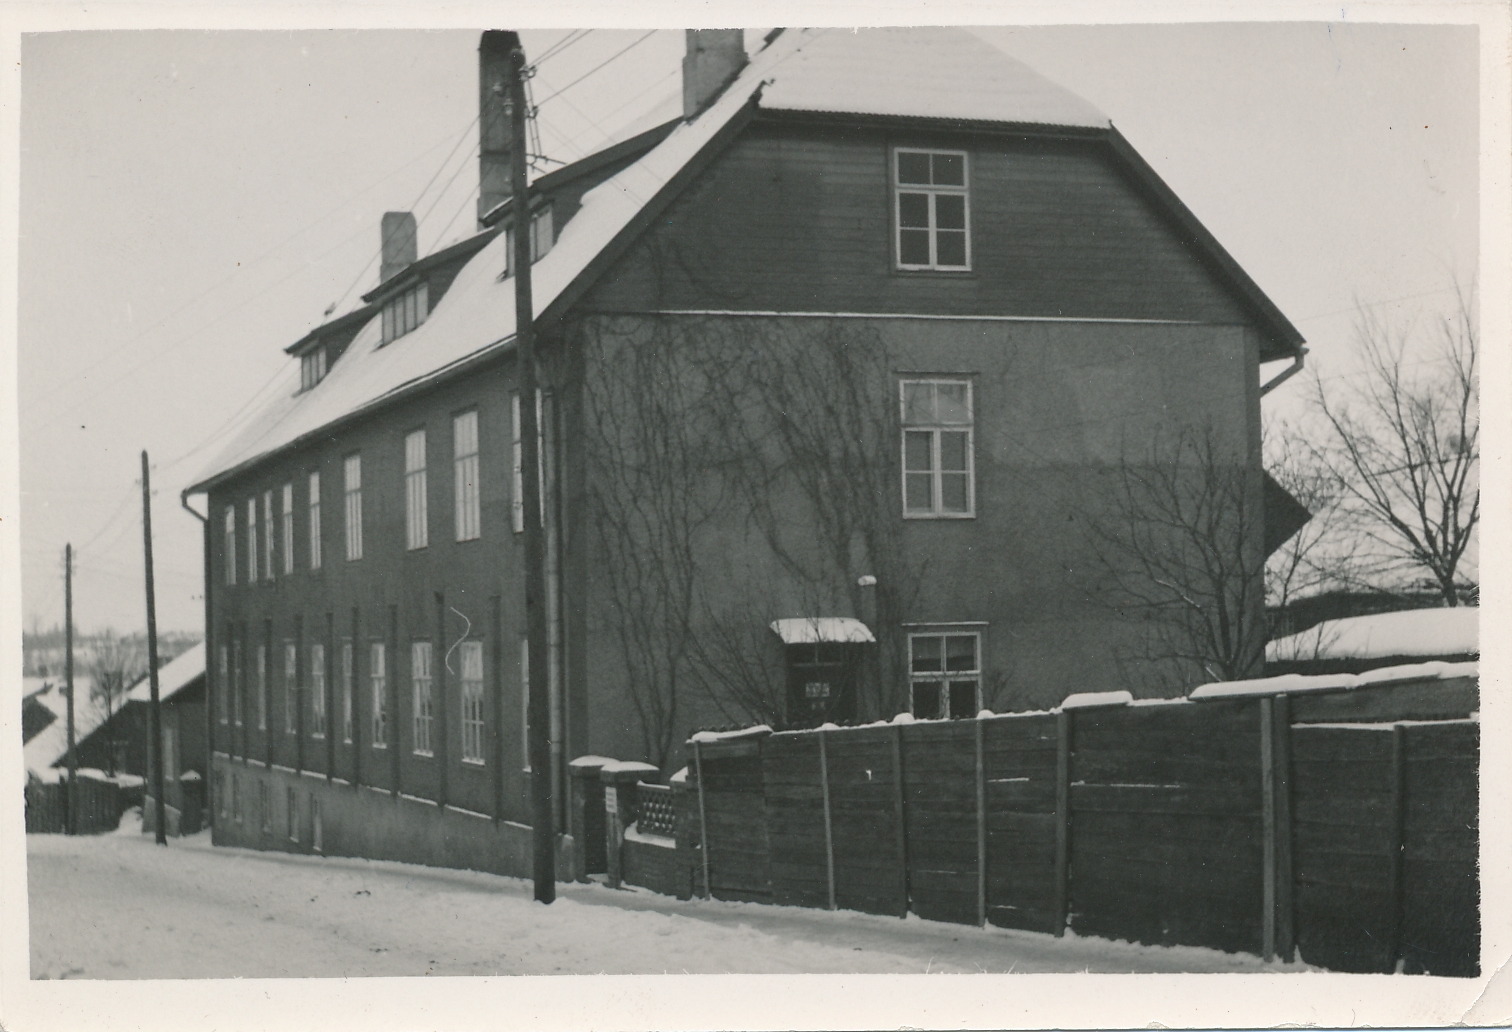 foto, Viljandi, Mäe tn 4, haigla nakkus- ja siseosakonna hoone (avati 1929), 1938 talv, A. Kiisla foto